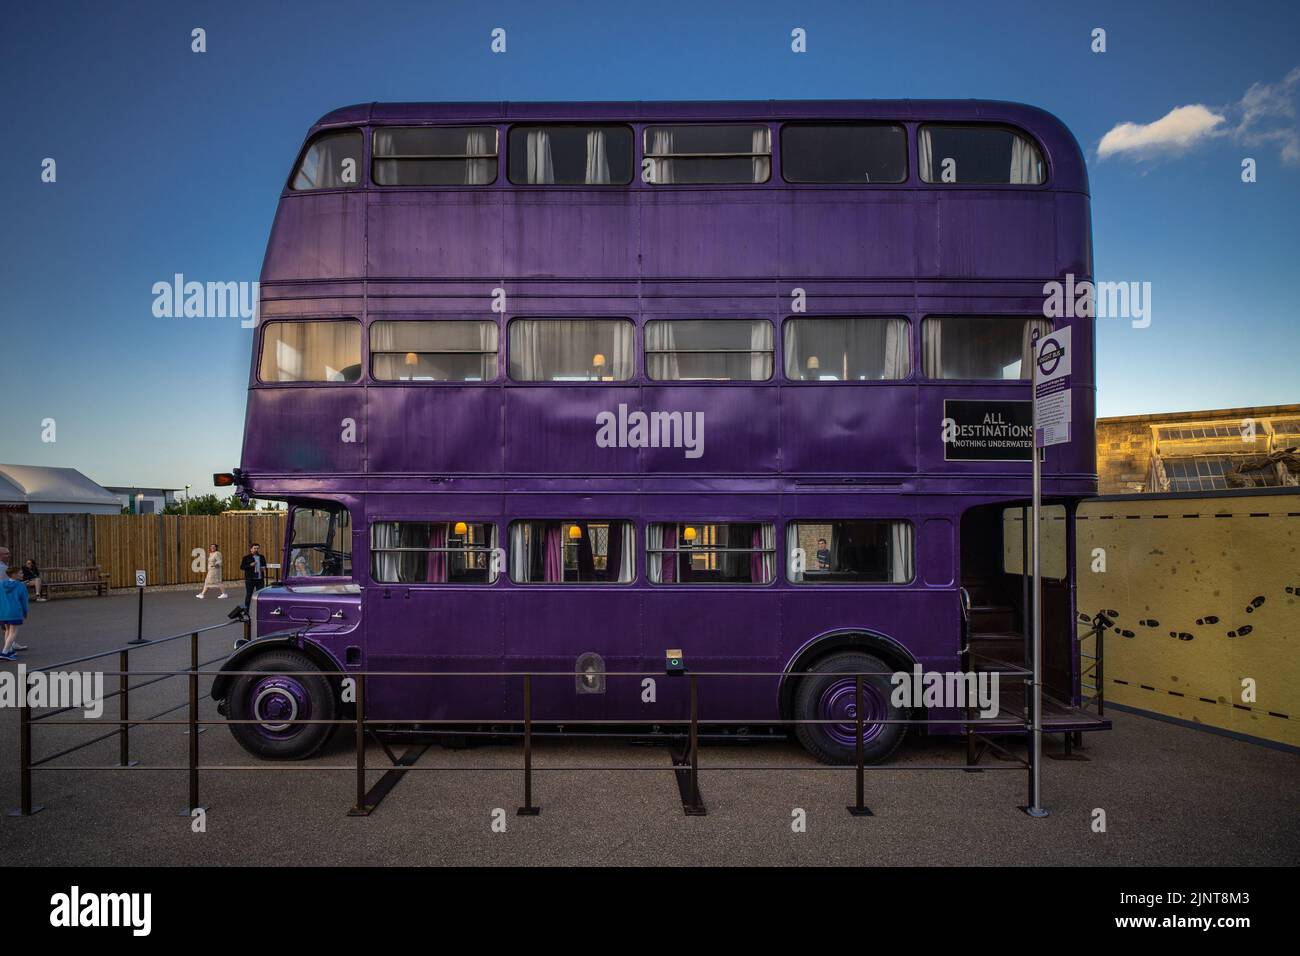 Londres, Reino Unido - 10 de junio de 2022: Autobús Knight del Prisionero de Azkaban, autobús púrpura de tres pisos en Warner Bros Studio, Londres Foto de stock